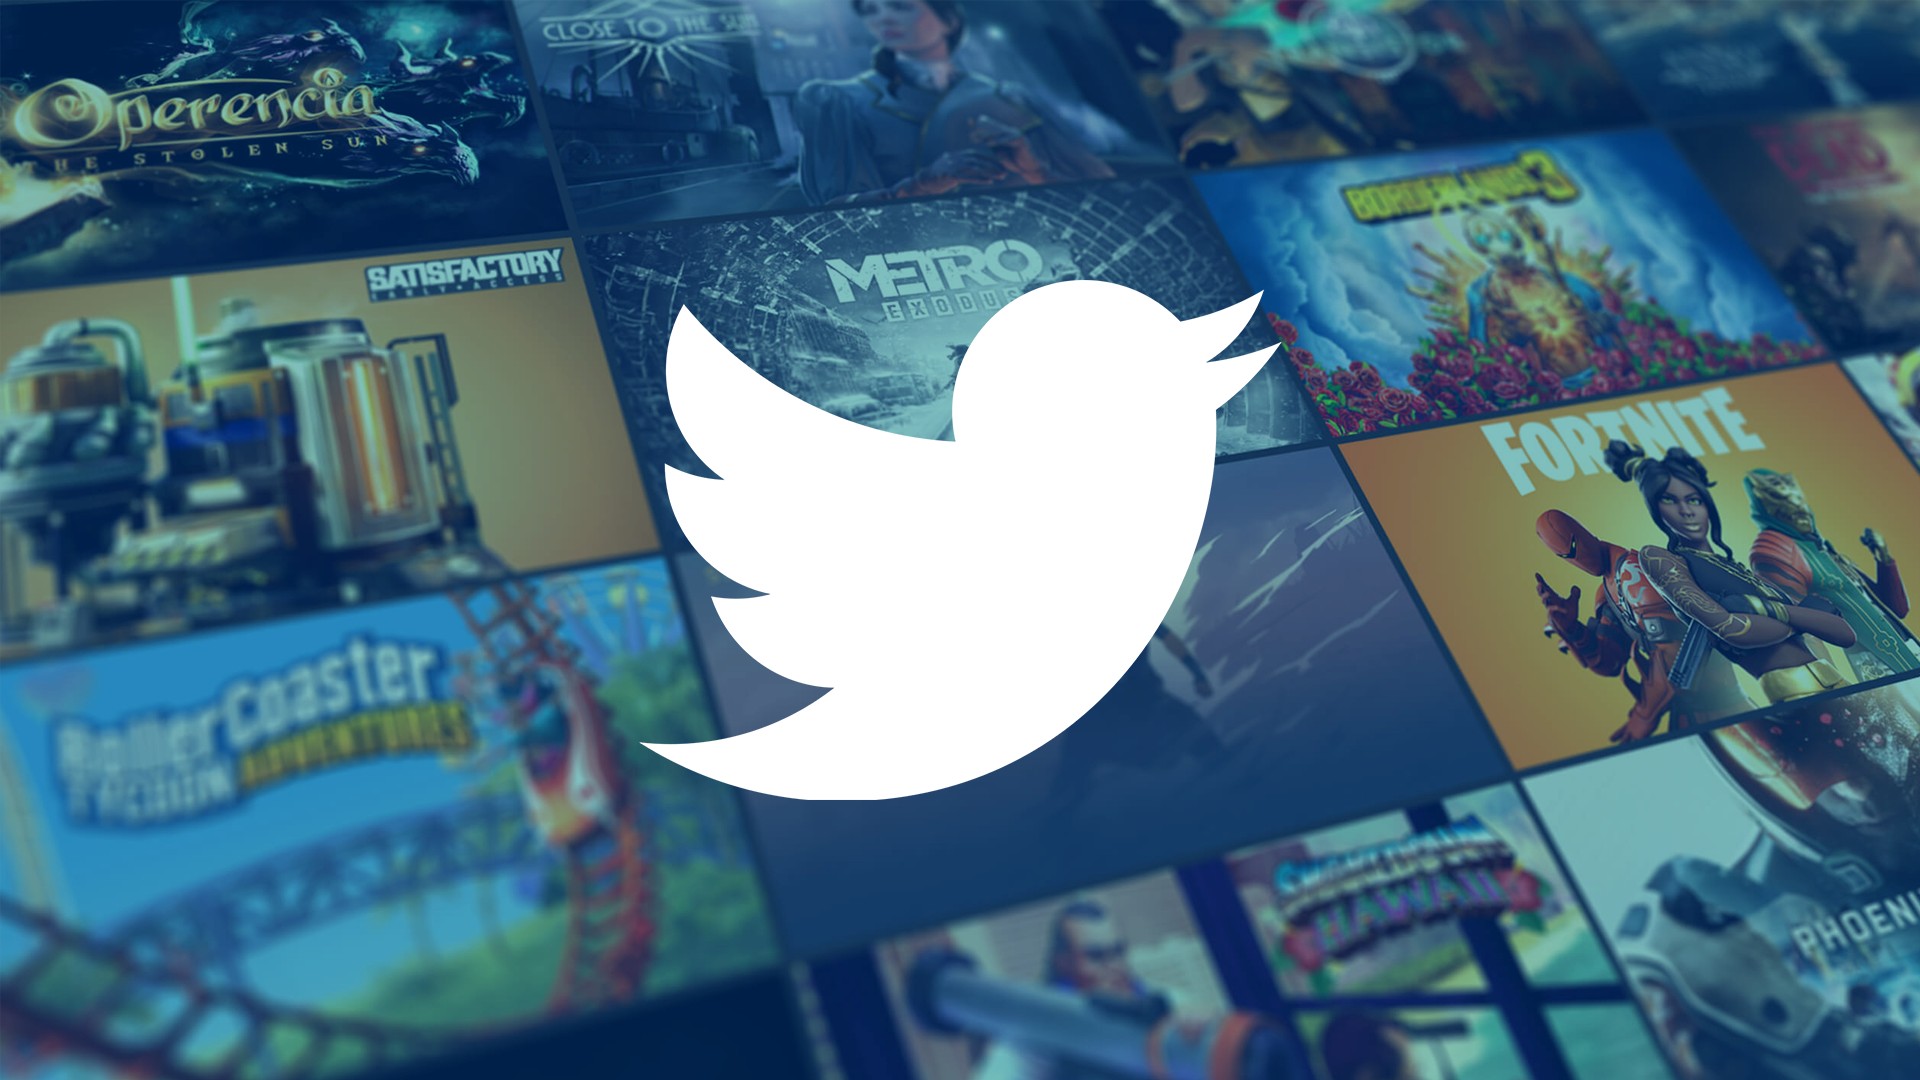 Twitter registra mais de 2 bilhões de Tweets sobre games em 2020